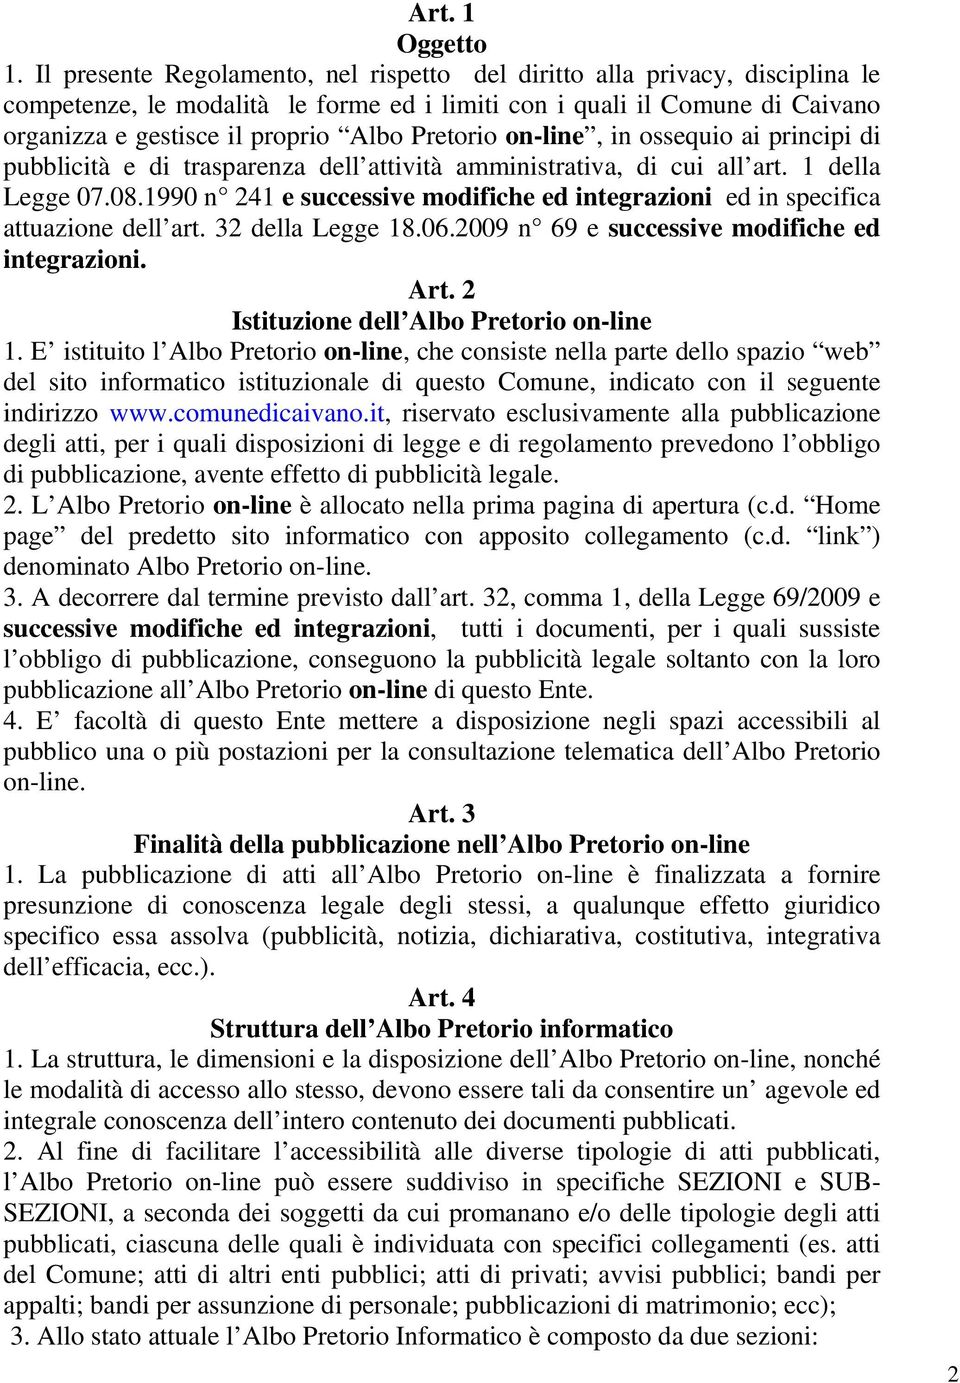 Pretorio on-line, in ossequio ai principi di pubblicità e di trasparenza dell attività amministrativa, di cui all art. 1 della Legge 07.08.